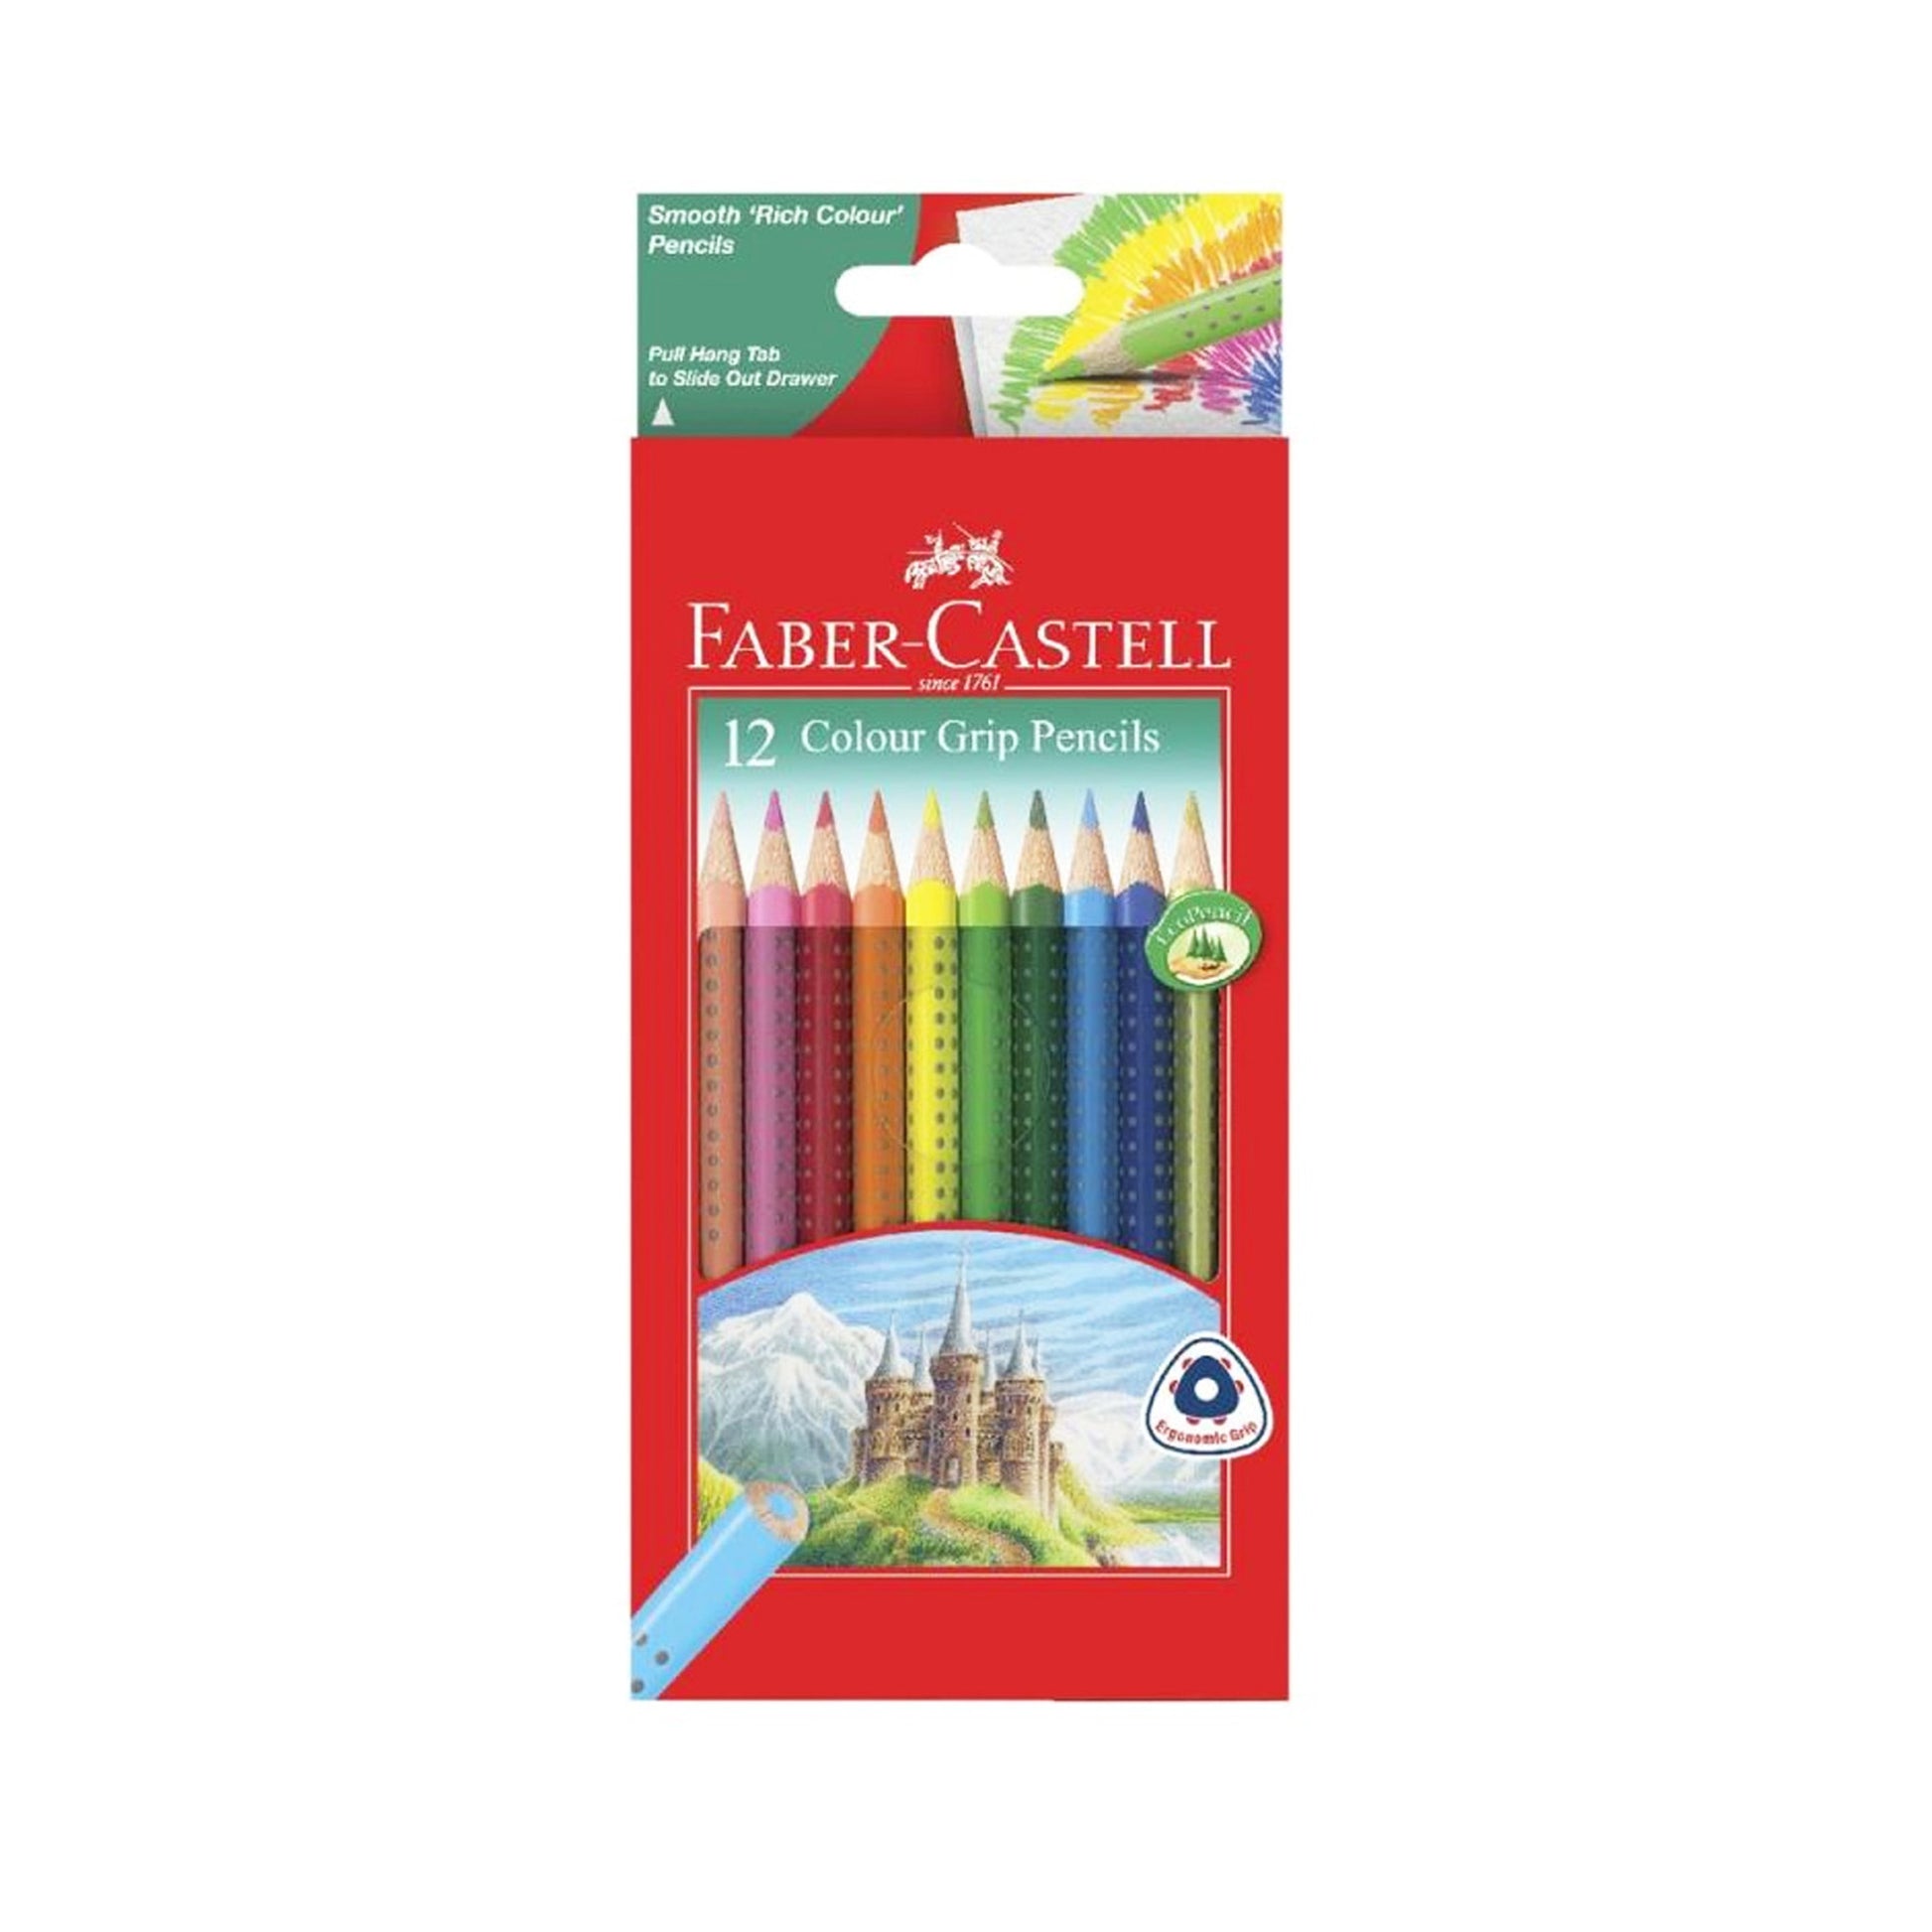 Faber Castell 12 color grip pencils